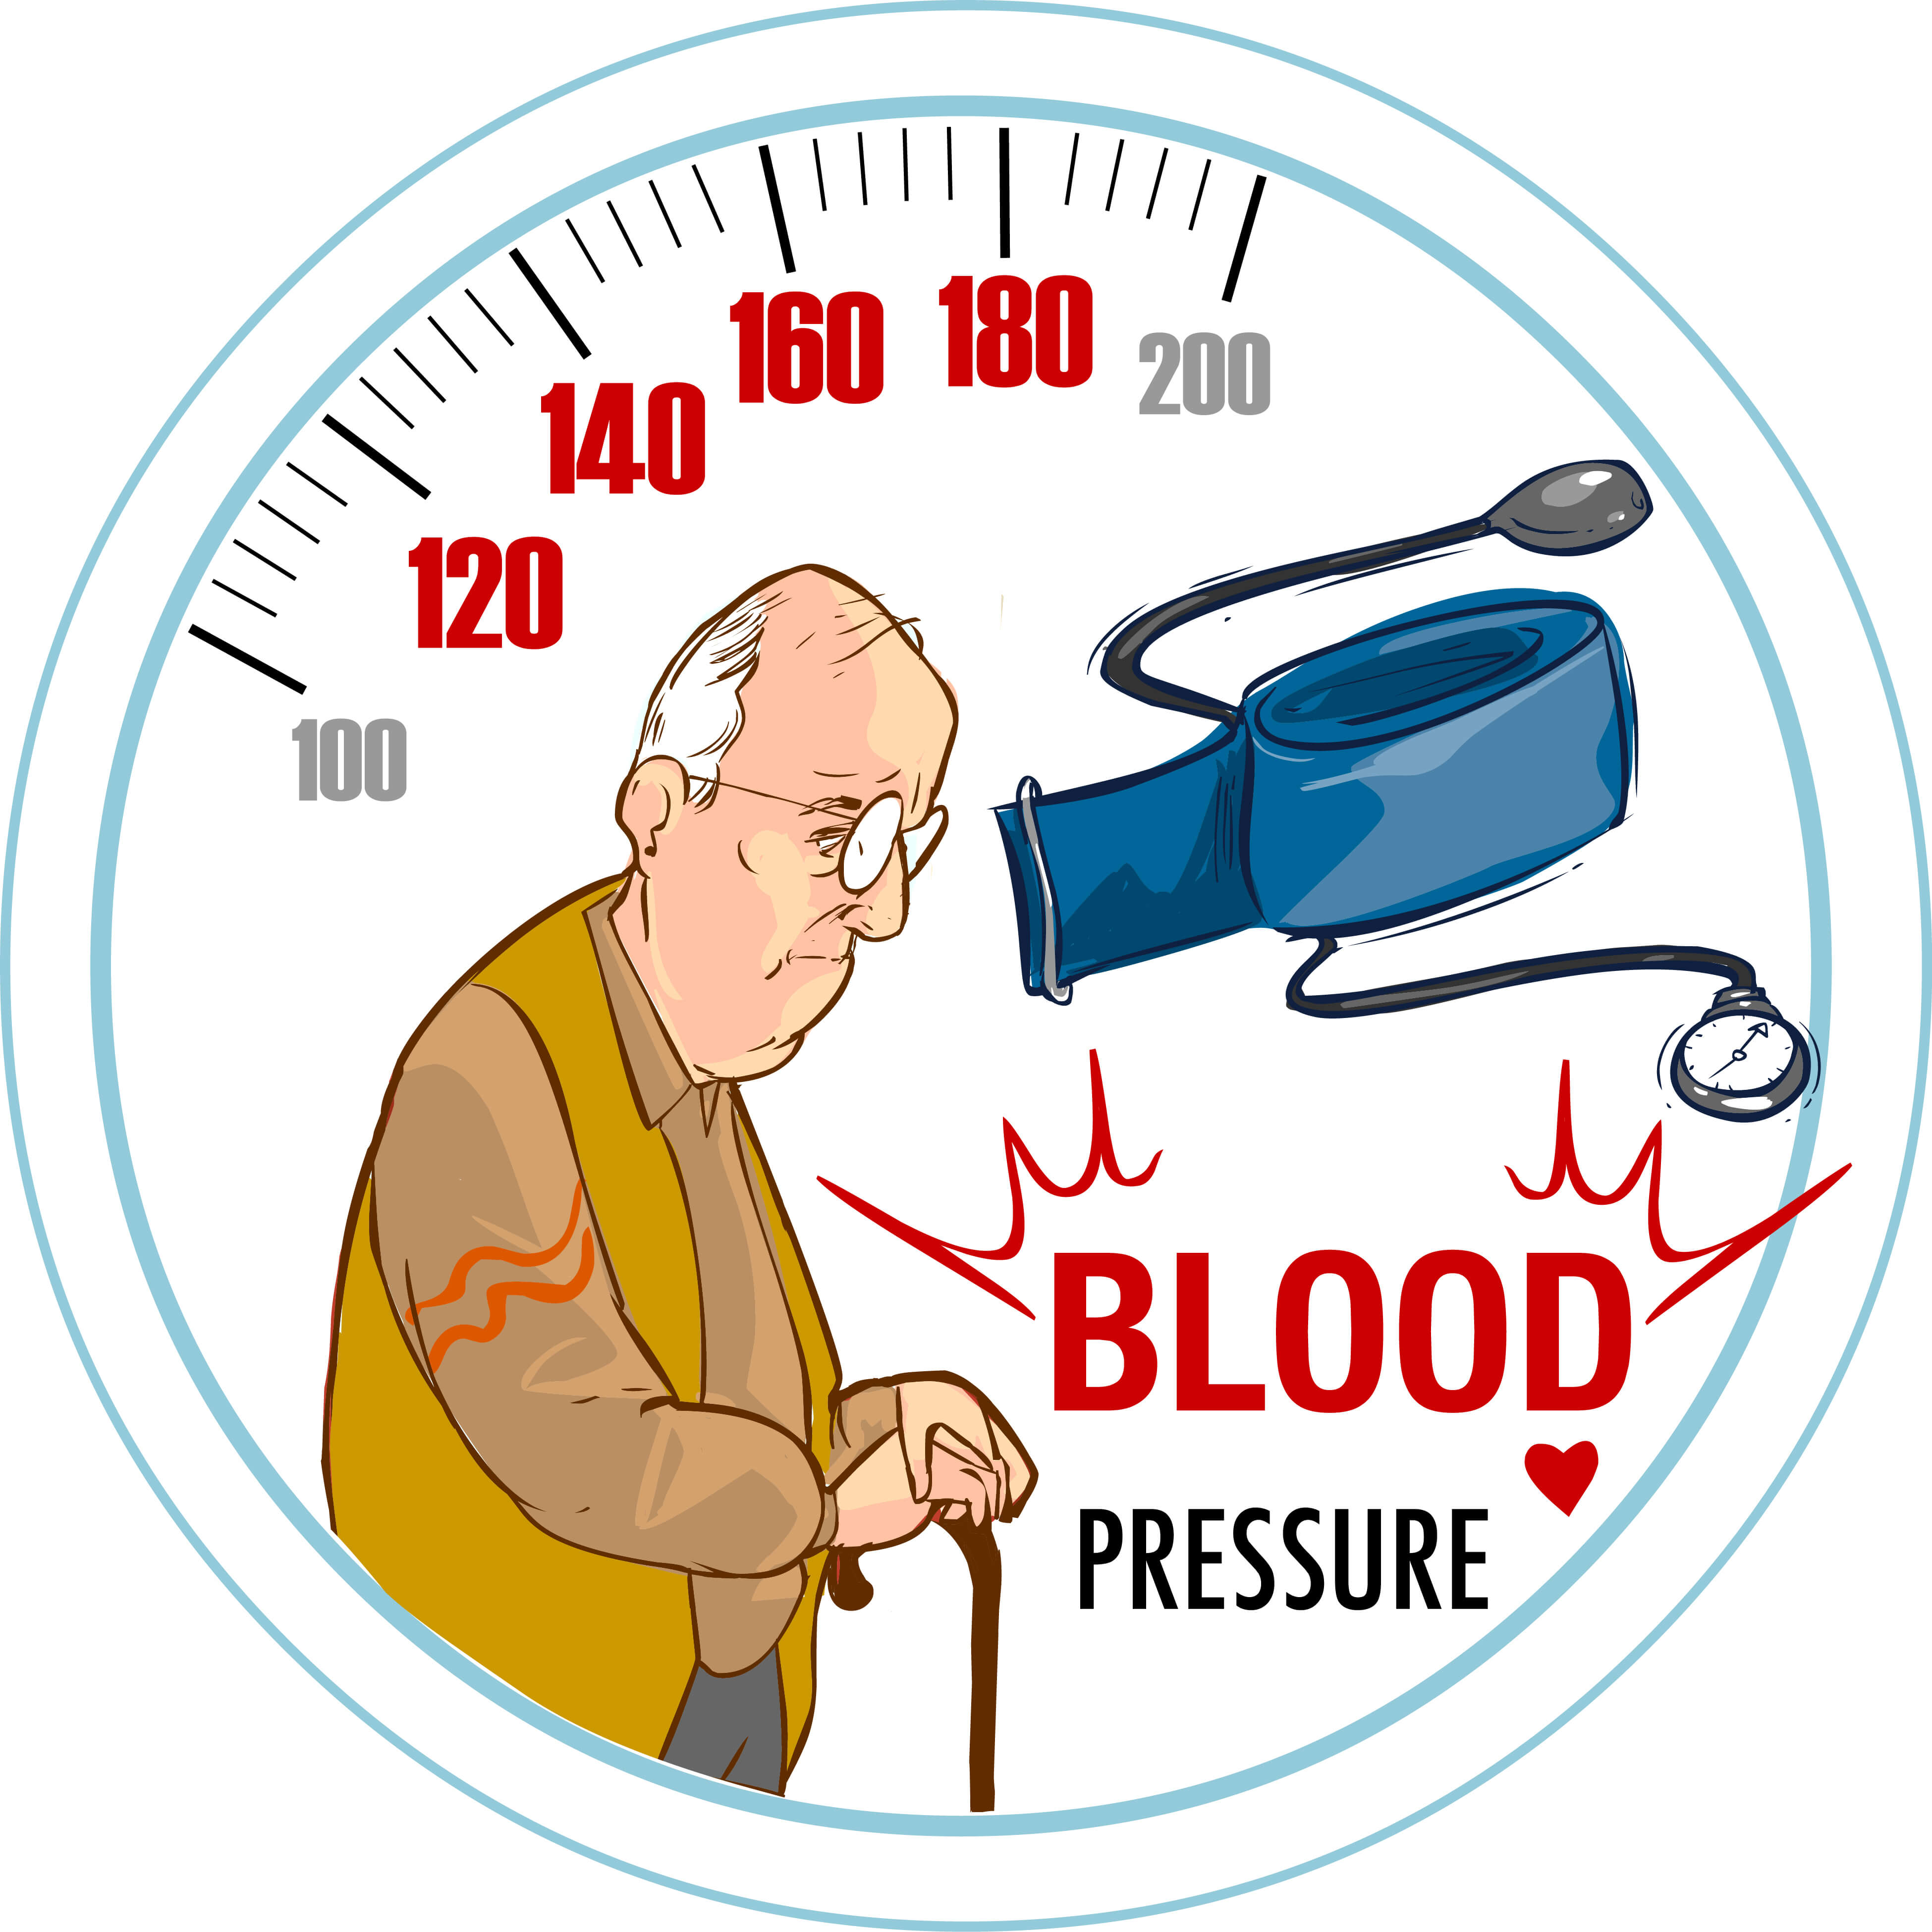 בדיקת לחץ דם לקשישים. איור: shutterstock